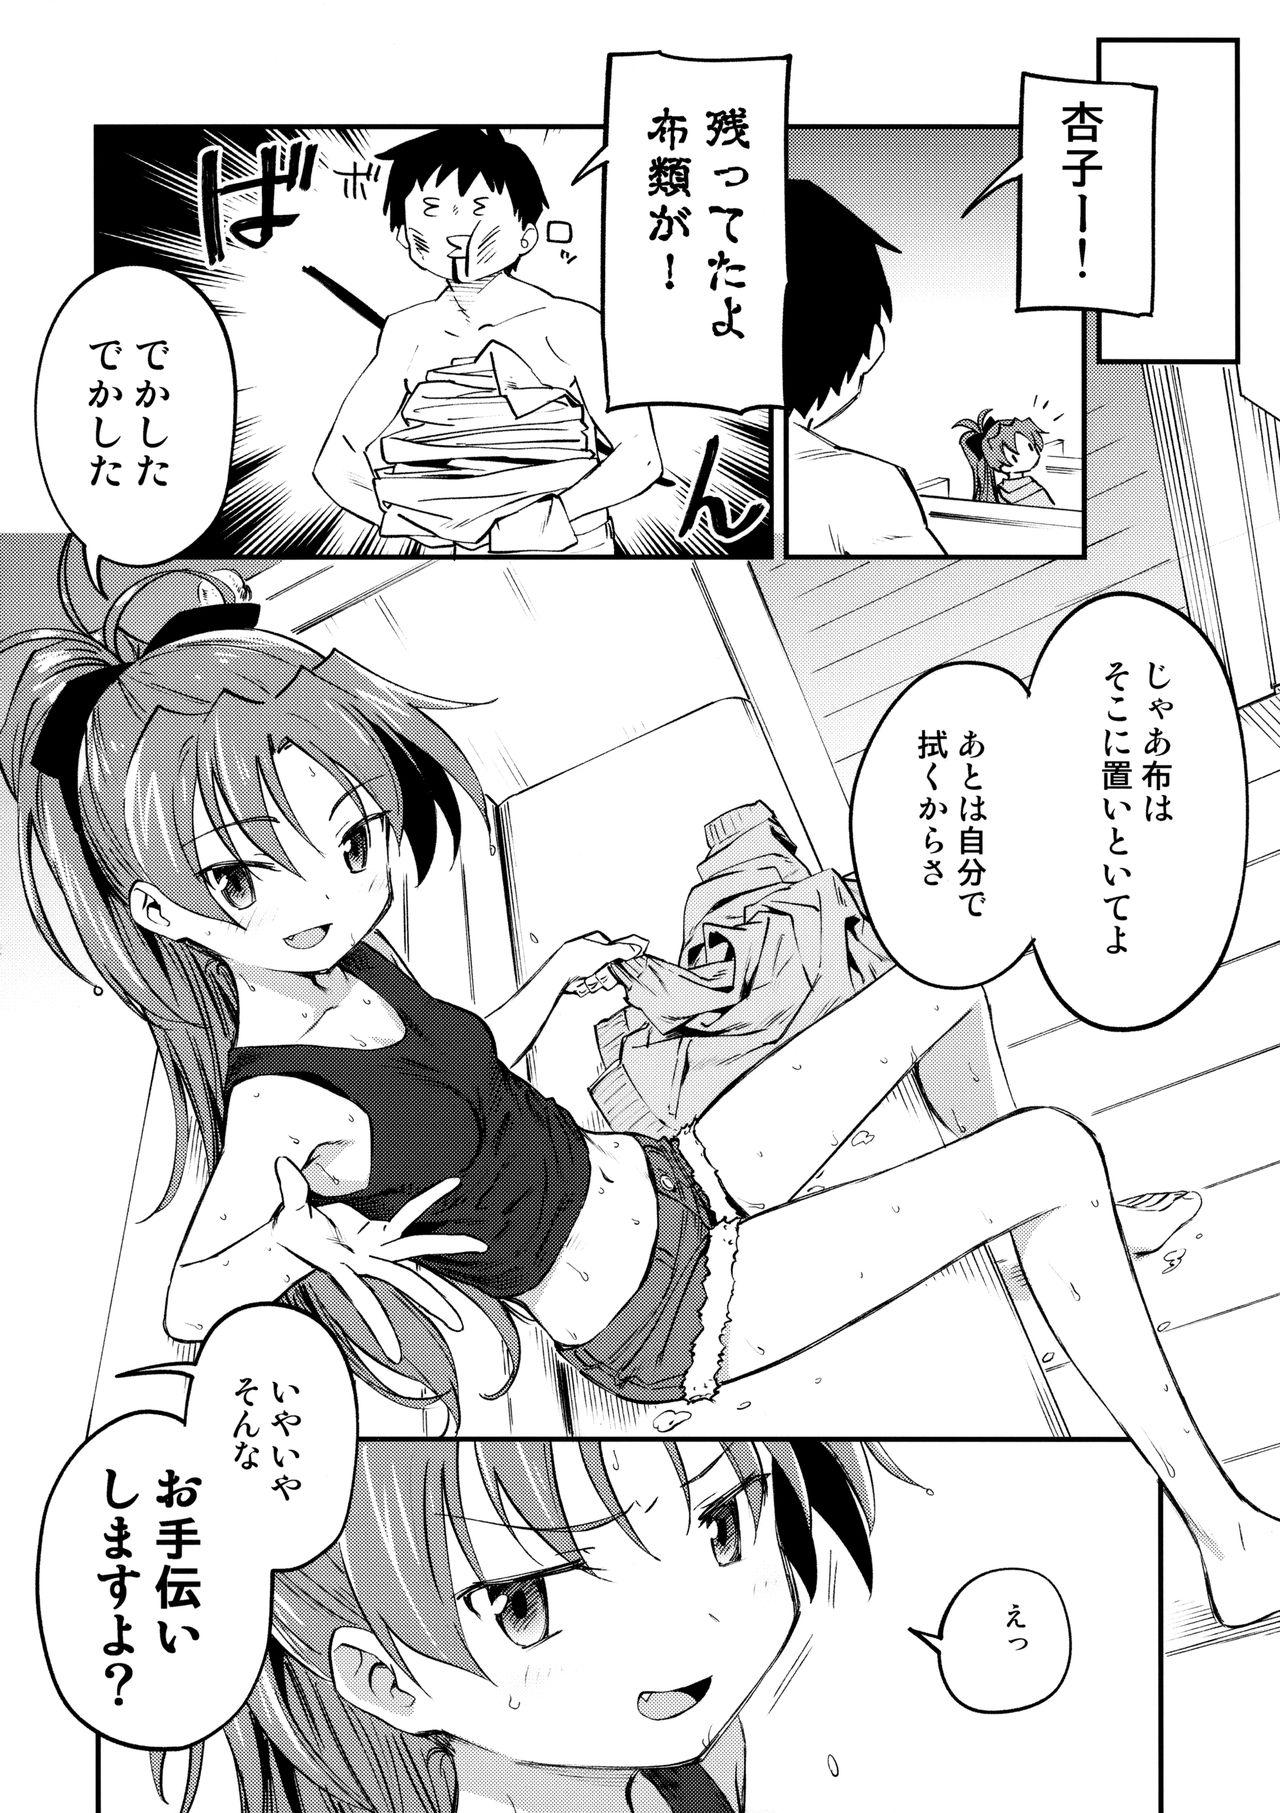 Nurumassage Kyouko to Are Suru Hon 3 - Puella magi madoka magica Erotic - Page 5